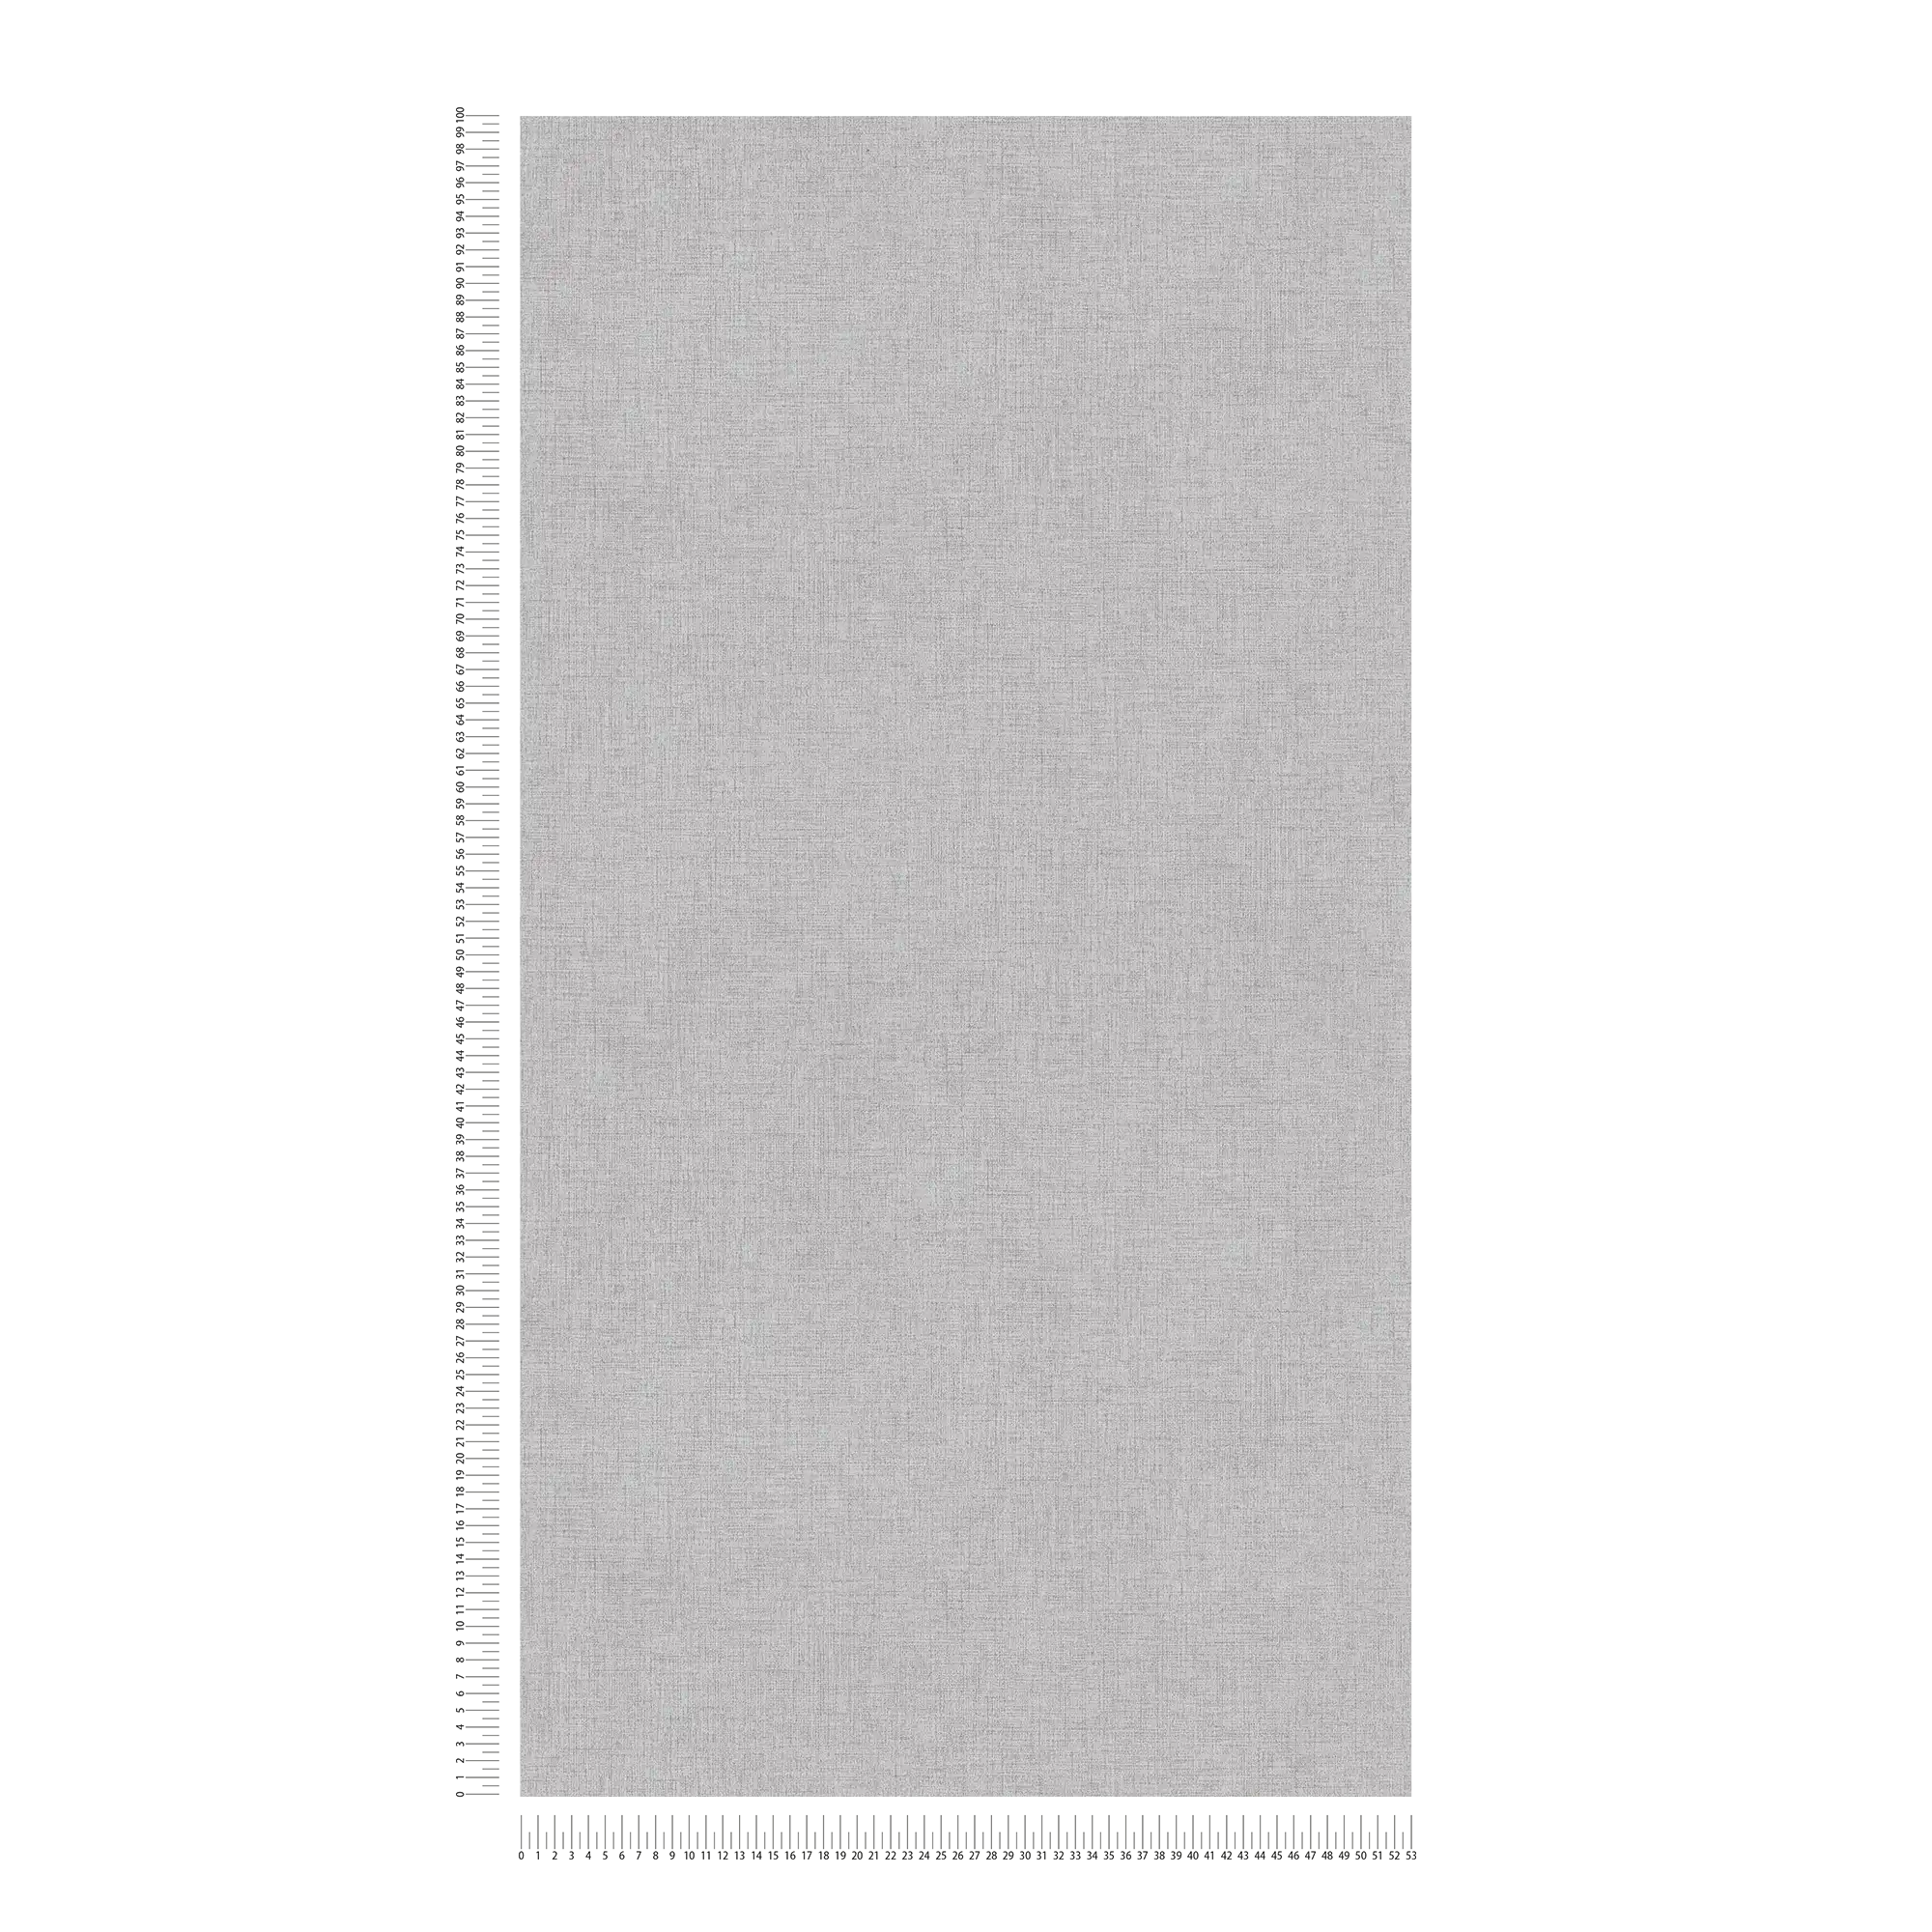             papier peint imitation lin uni, neutre - gris
        